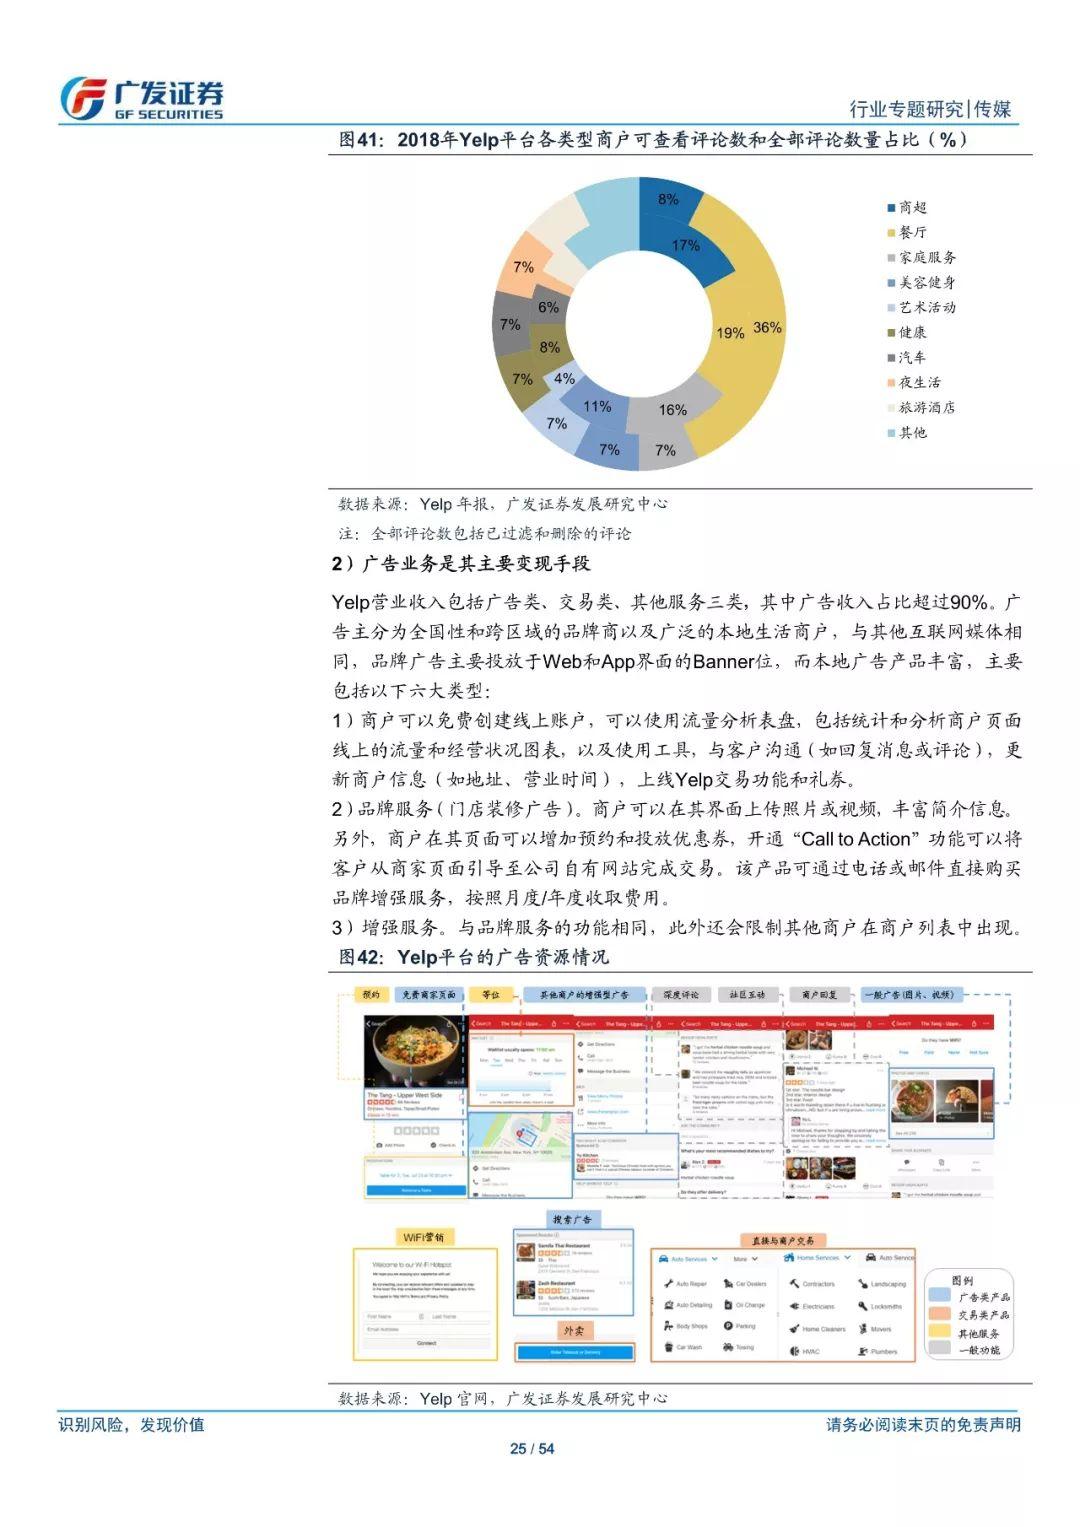 大众点评美团韩式烤肉五连图长图PSD广告设计素材海报模板免费下载-享设计